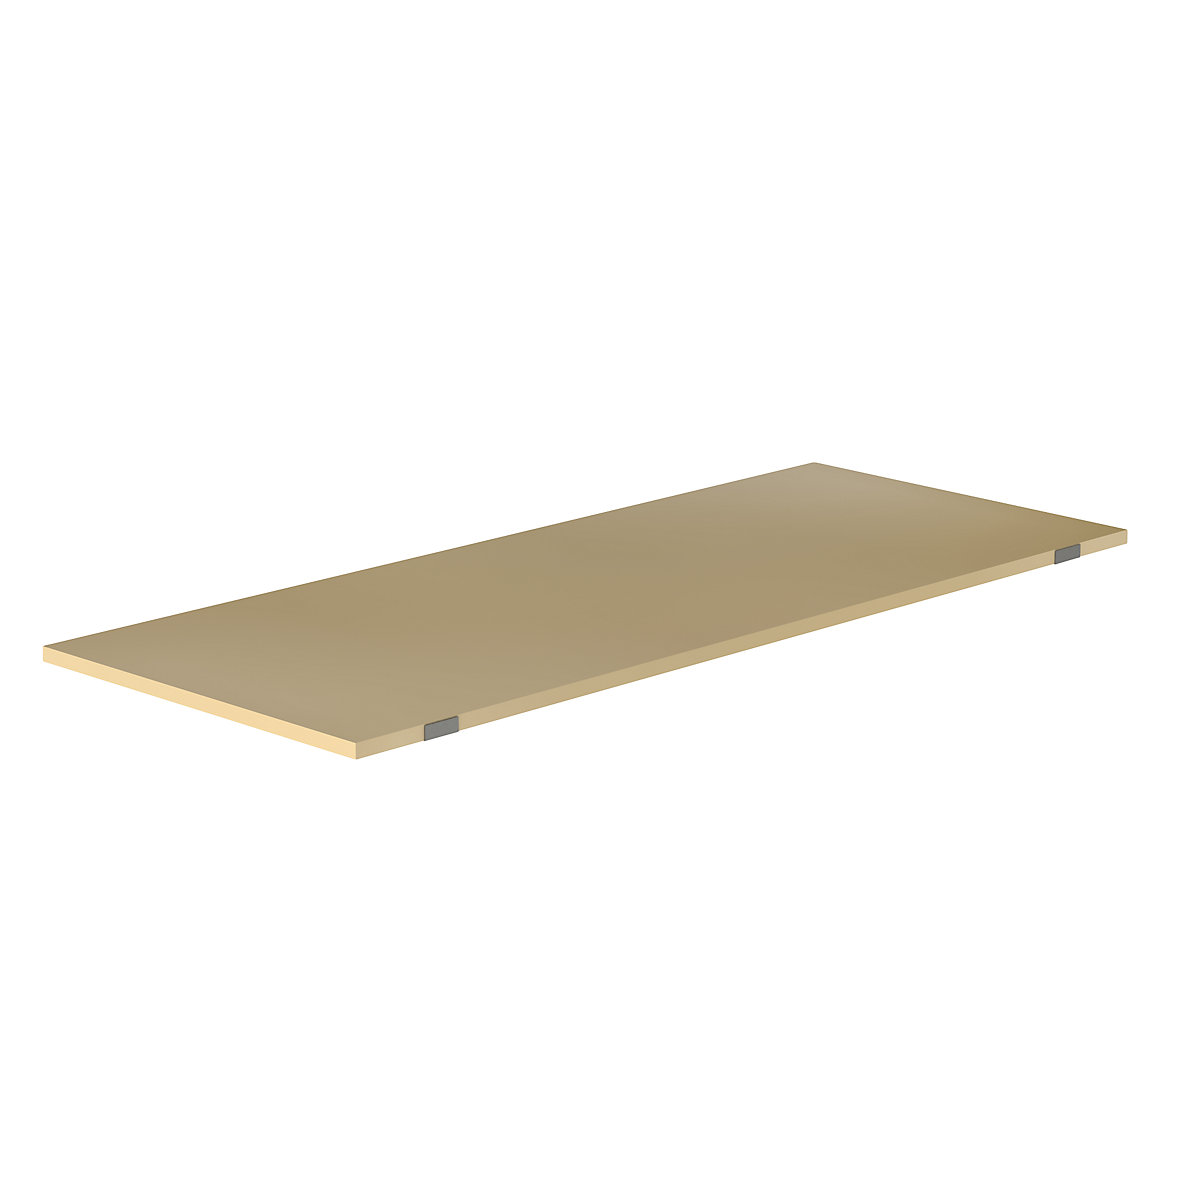 EUROKRAFTpro – Shelf for pallet shelf unit, moulded chipboard, for beam length 2700 mm, shelf unit depth 1100 mm